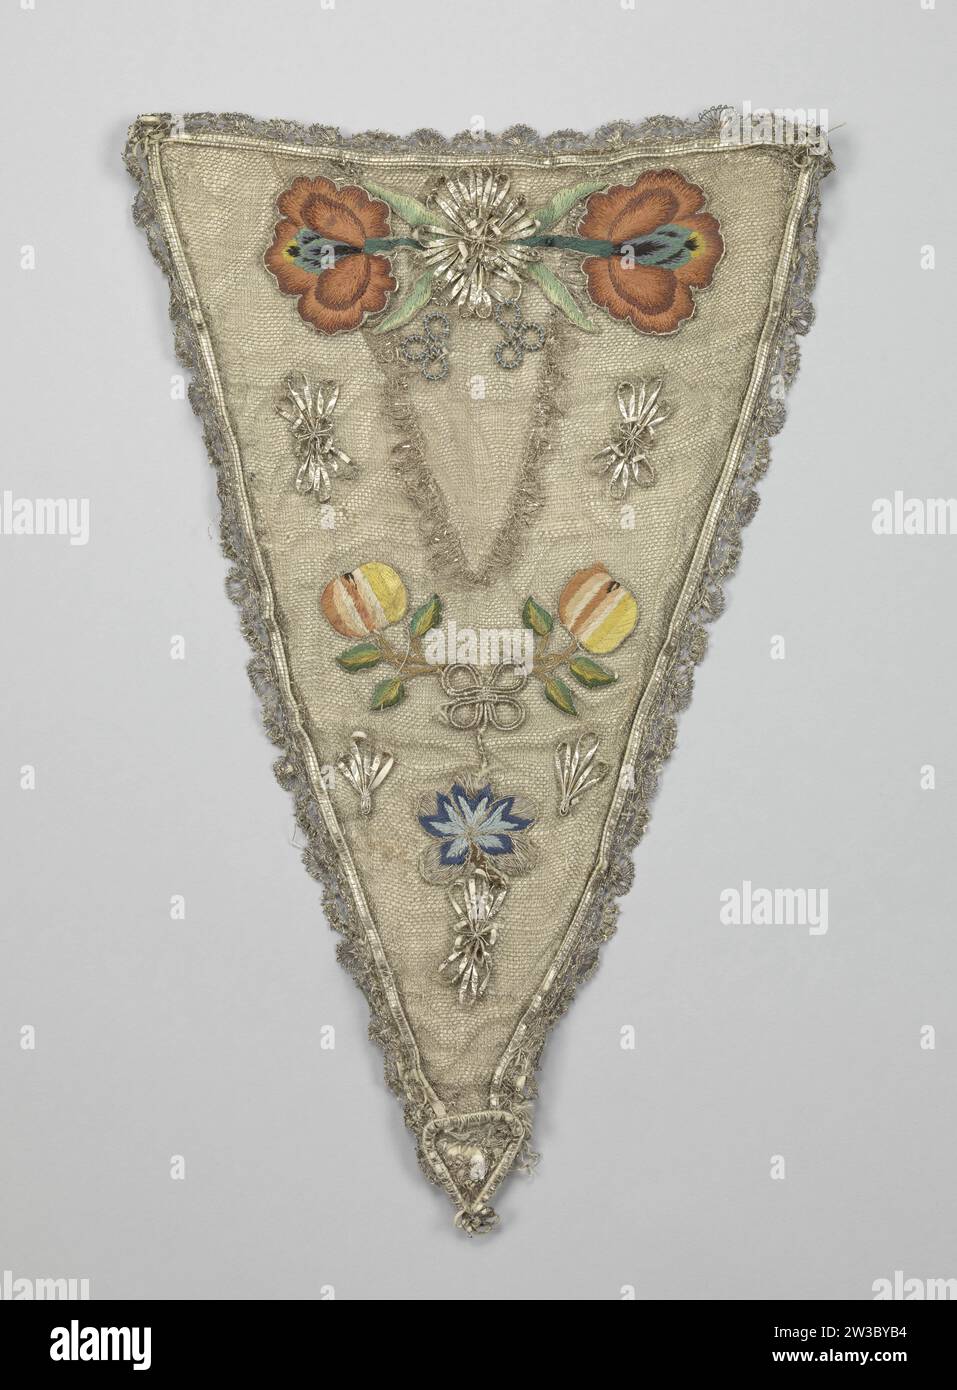 Devant-de-Gorge oder dreieckiges Bruststück aus silbernem Tüll, auf dem bunte, gestickte Seidenblumenapplikationen und -Schleifen aus Silber, rundum mit silberner Seite, anonym, ca. 1750 - c. 1775 Ein Devant-de-Gorge oder dreieckiger Bruststück aus silbernem Tüll, auf dem mehrfarbige, gestickte Seidenblumenapplikationen und silberne Bögen angebracht sind; rundum mit silberner Seite. Modell: Langes Dreieck, das in einem herzförmigen Ornament endet. Der Umfang ist durch eine Pergamentkante mit Silber gekennzeichnet. Mit cremefarbener Seide gefüttert und mit sechs schwarzen Metallknöpfen ausgestattet. Dekoration: Eine kleine Rosette aufgewunden - Stockfoto